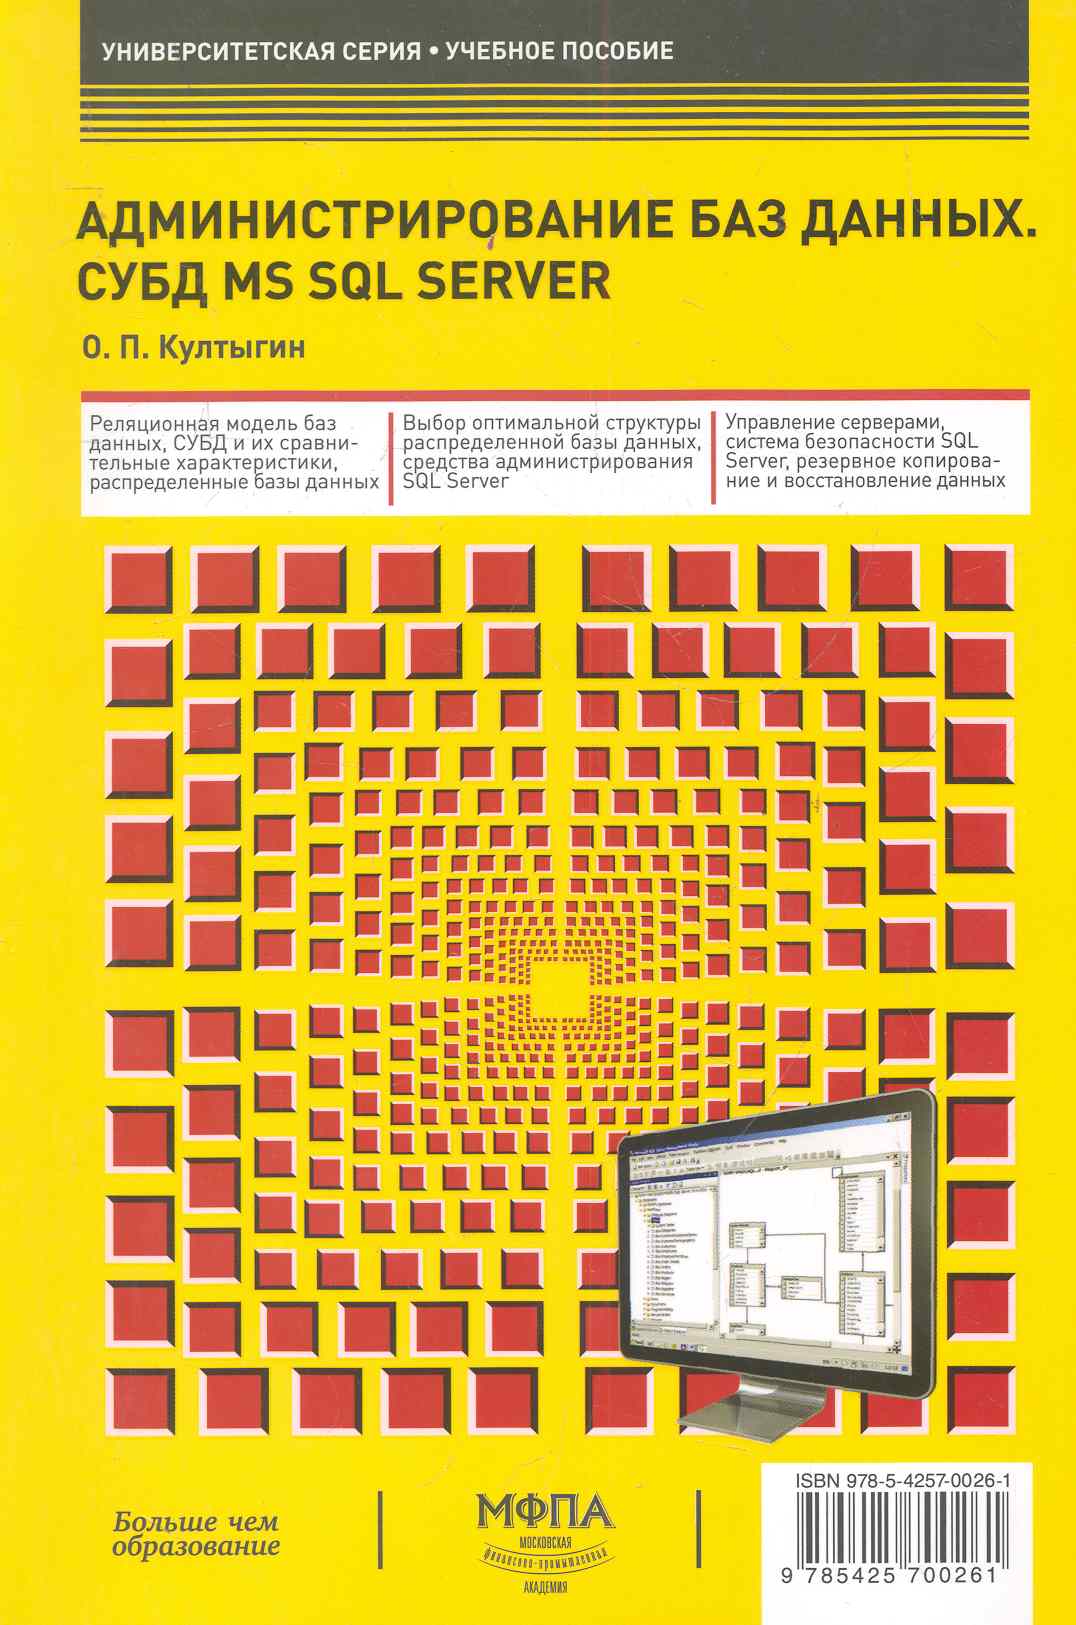 Администрирование баз данных. СУБД MS SQL Server култыгин олег петрович администрирование баз данных субд ms sql server